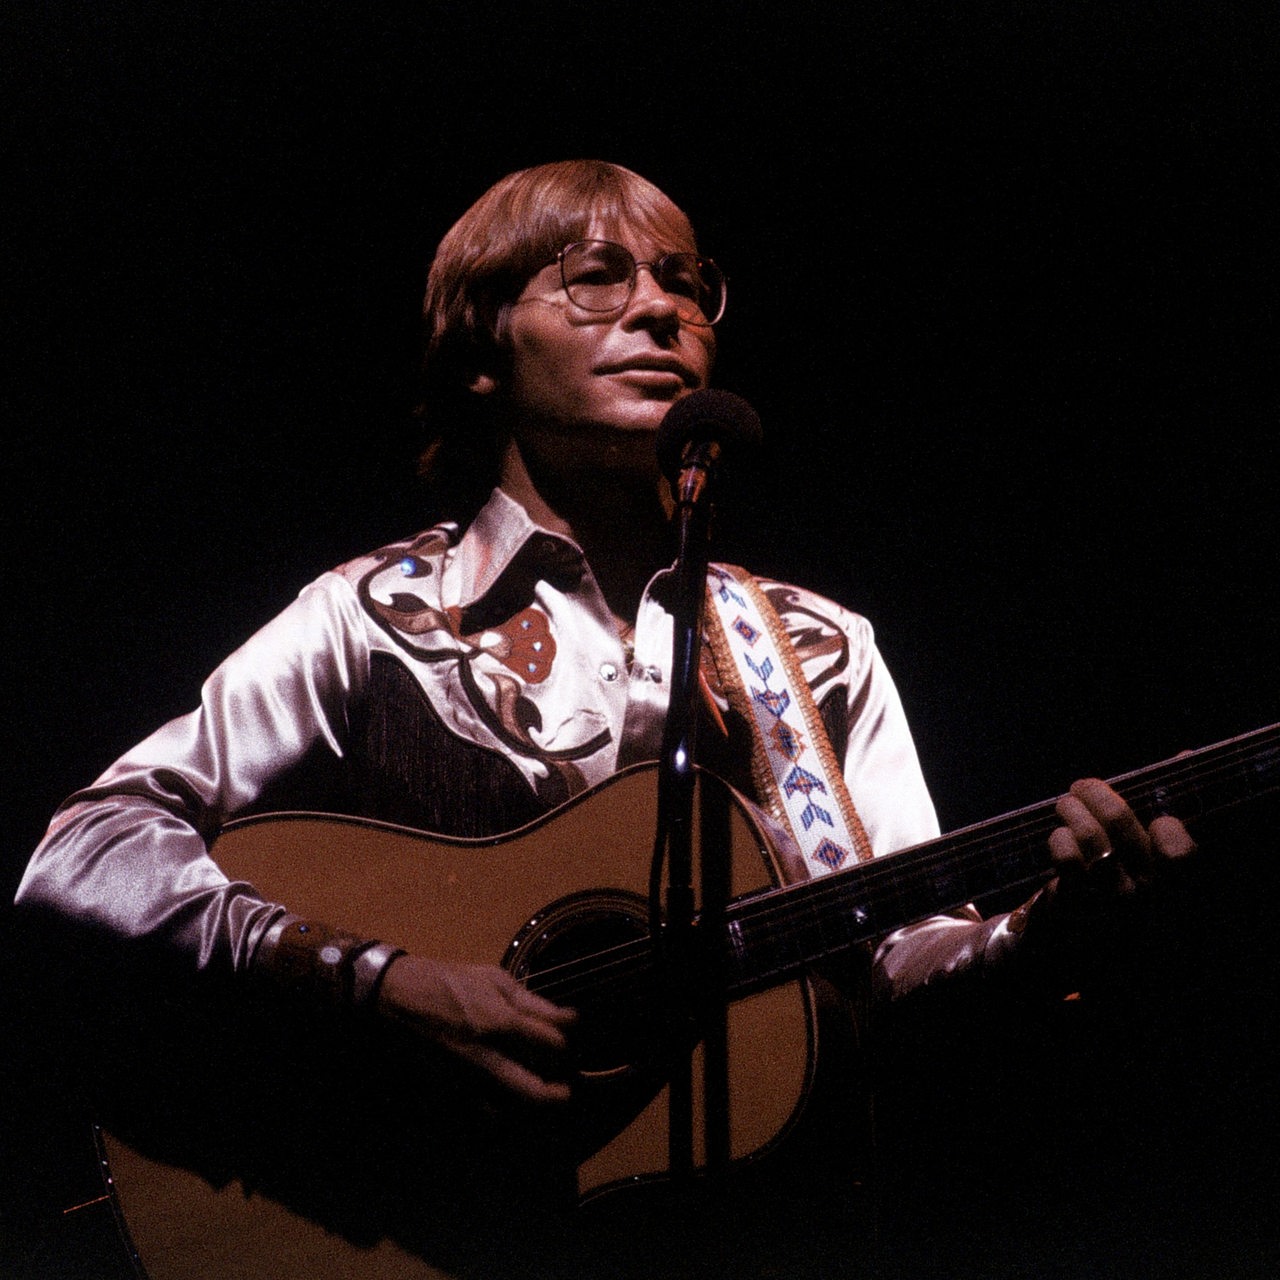 Countrysänger John Denver bei einem Auftritt in den 80er-Jahren (Archivbild)